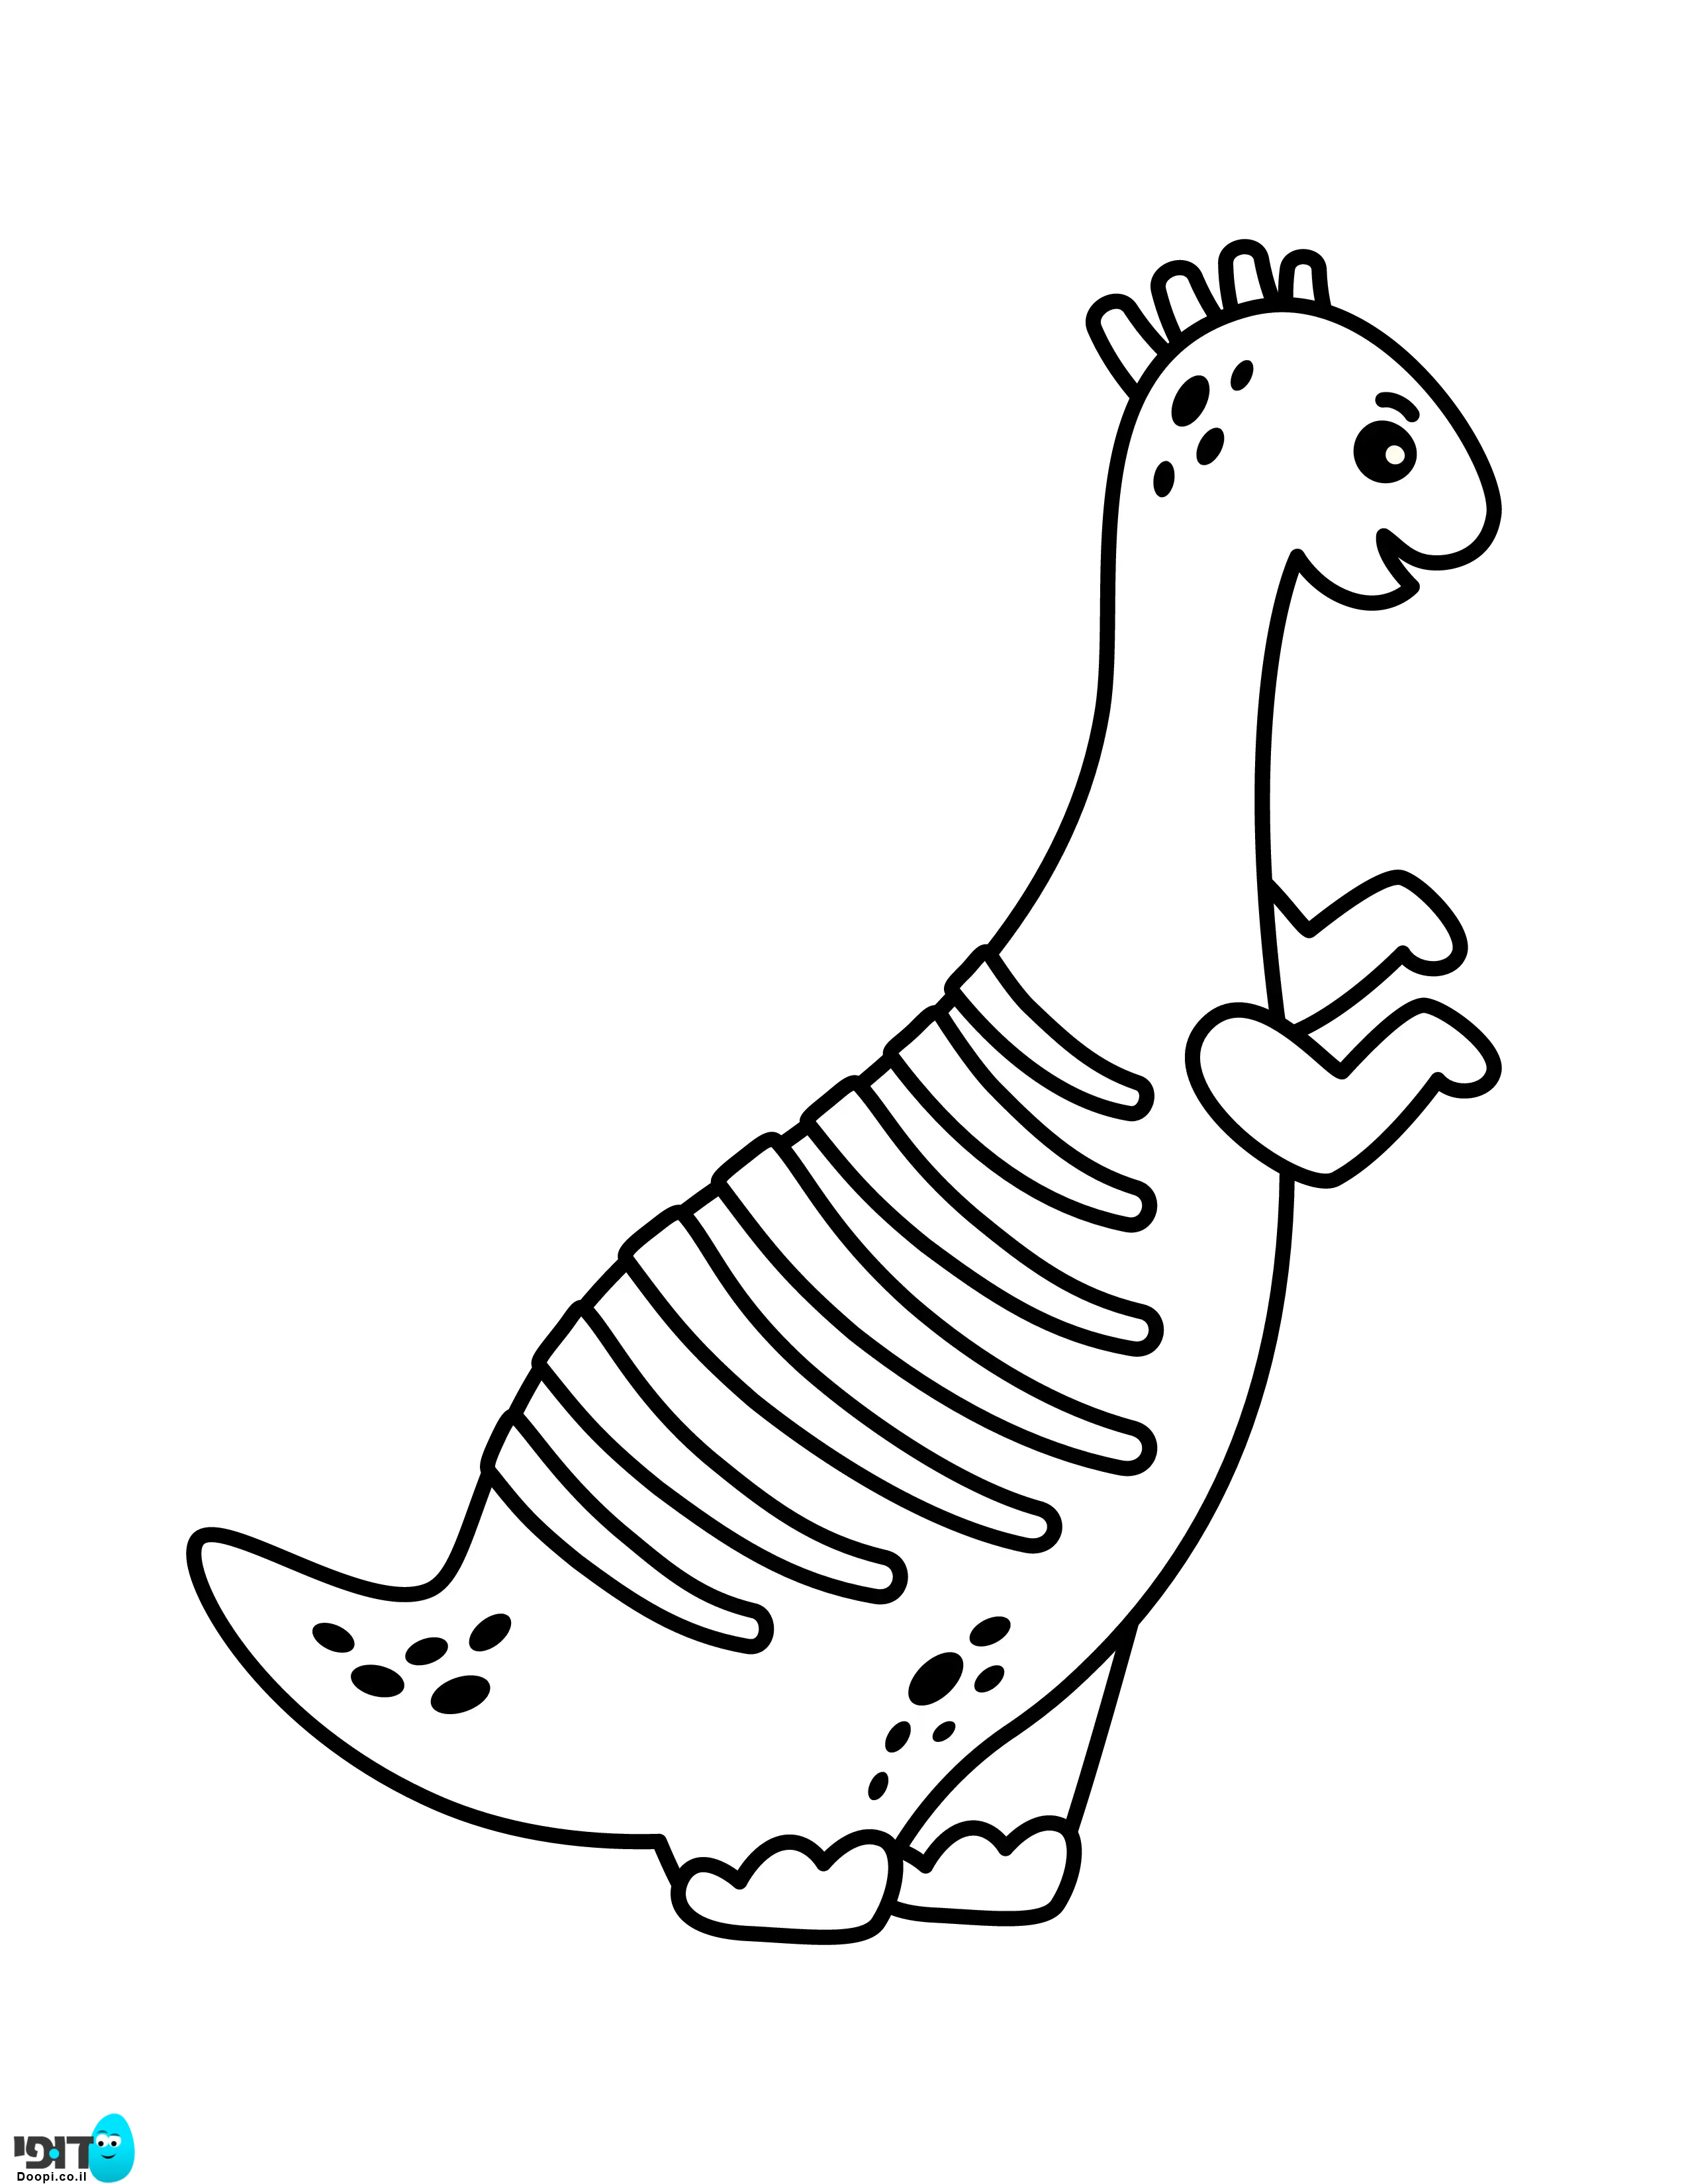 דף צביעה דינוזאור מיוחד וחמוד